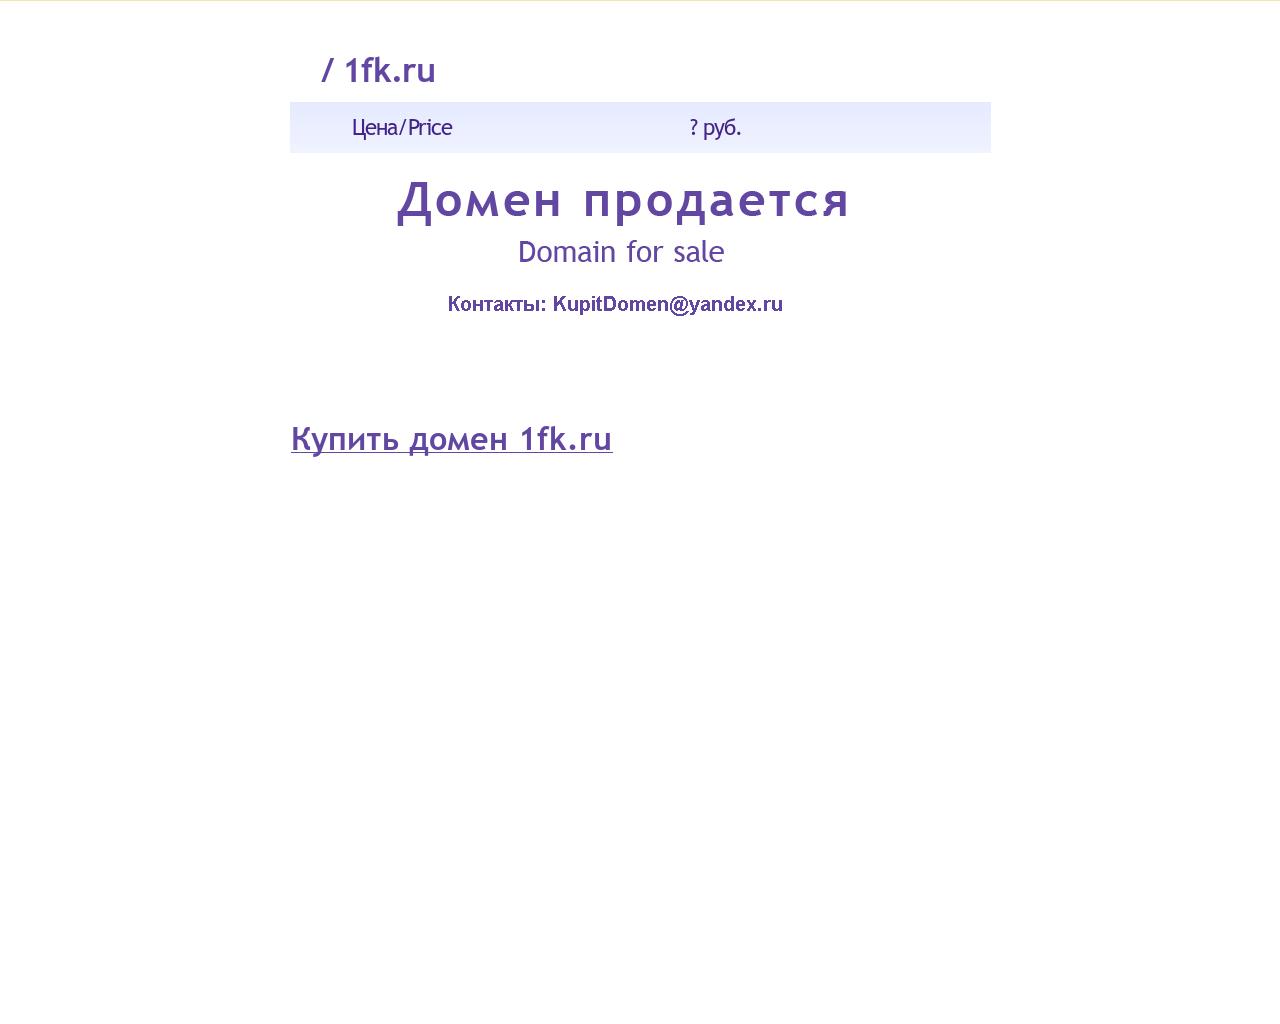 Изображение сайта 1fk.ru в разрешении 1280x1024